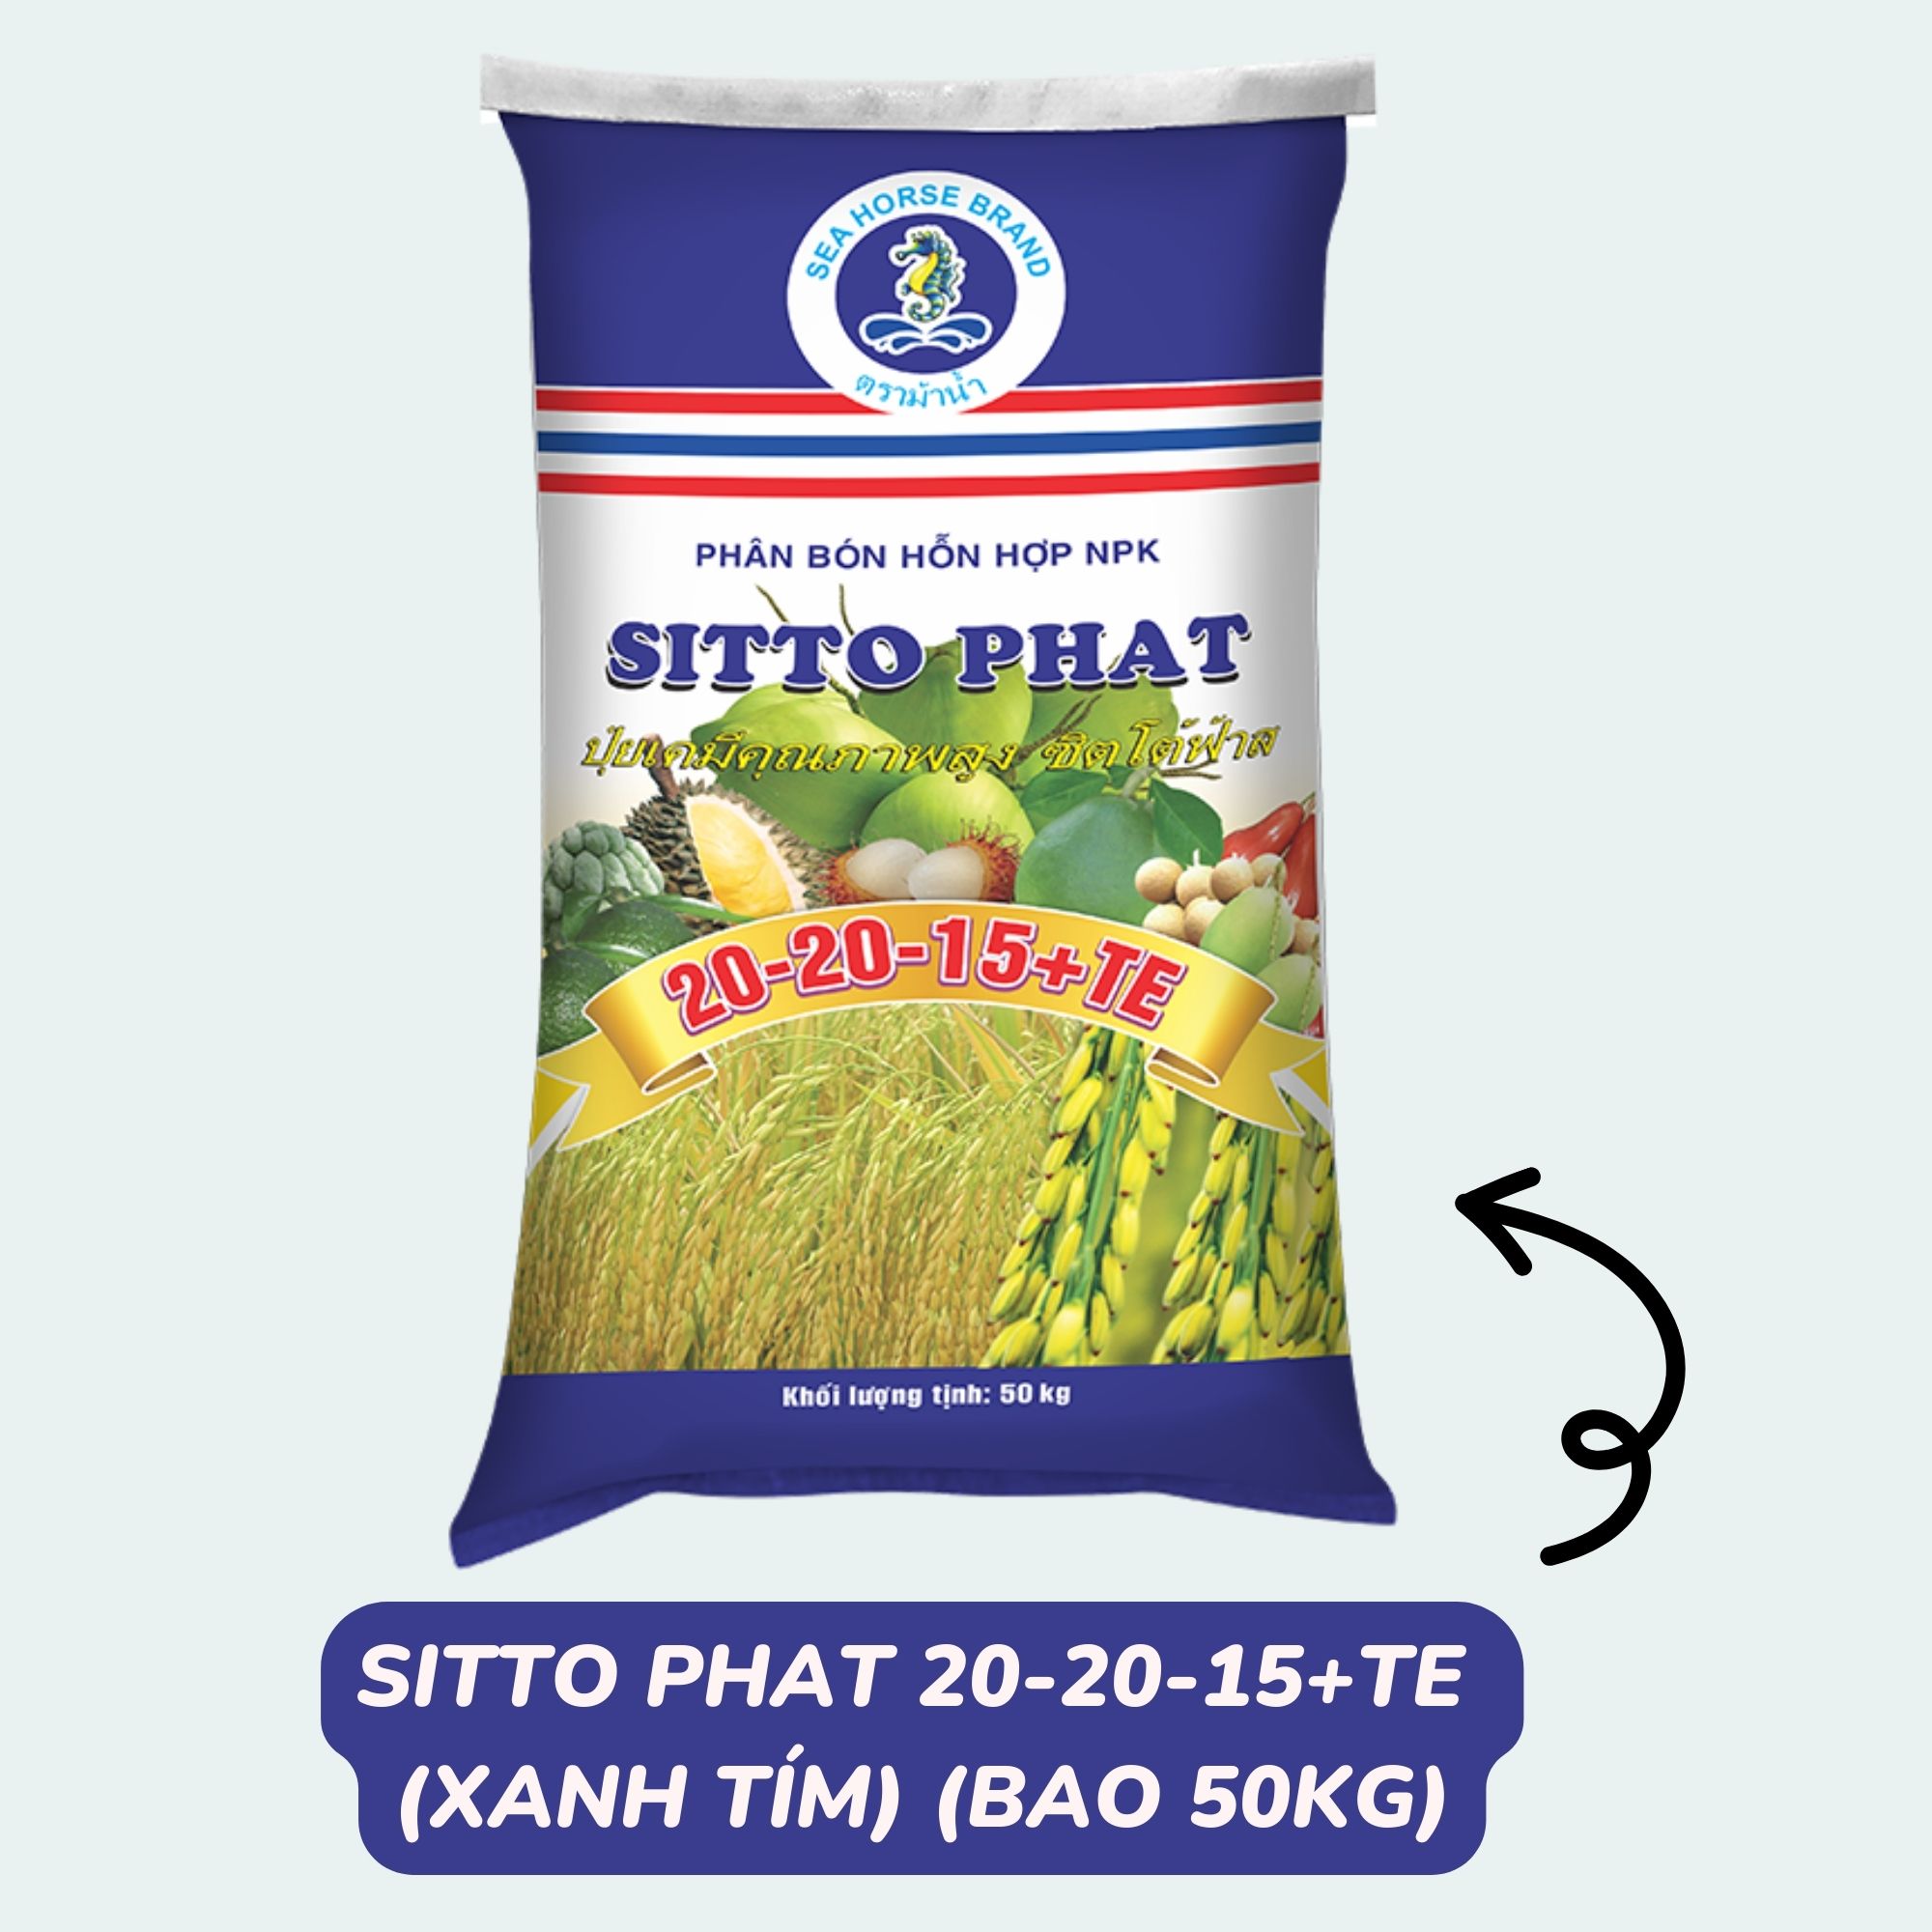 Phân bón Sitto Phat 20-20-15+TE (Xanh Tím) (Bao 50kg)